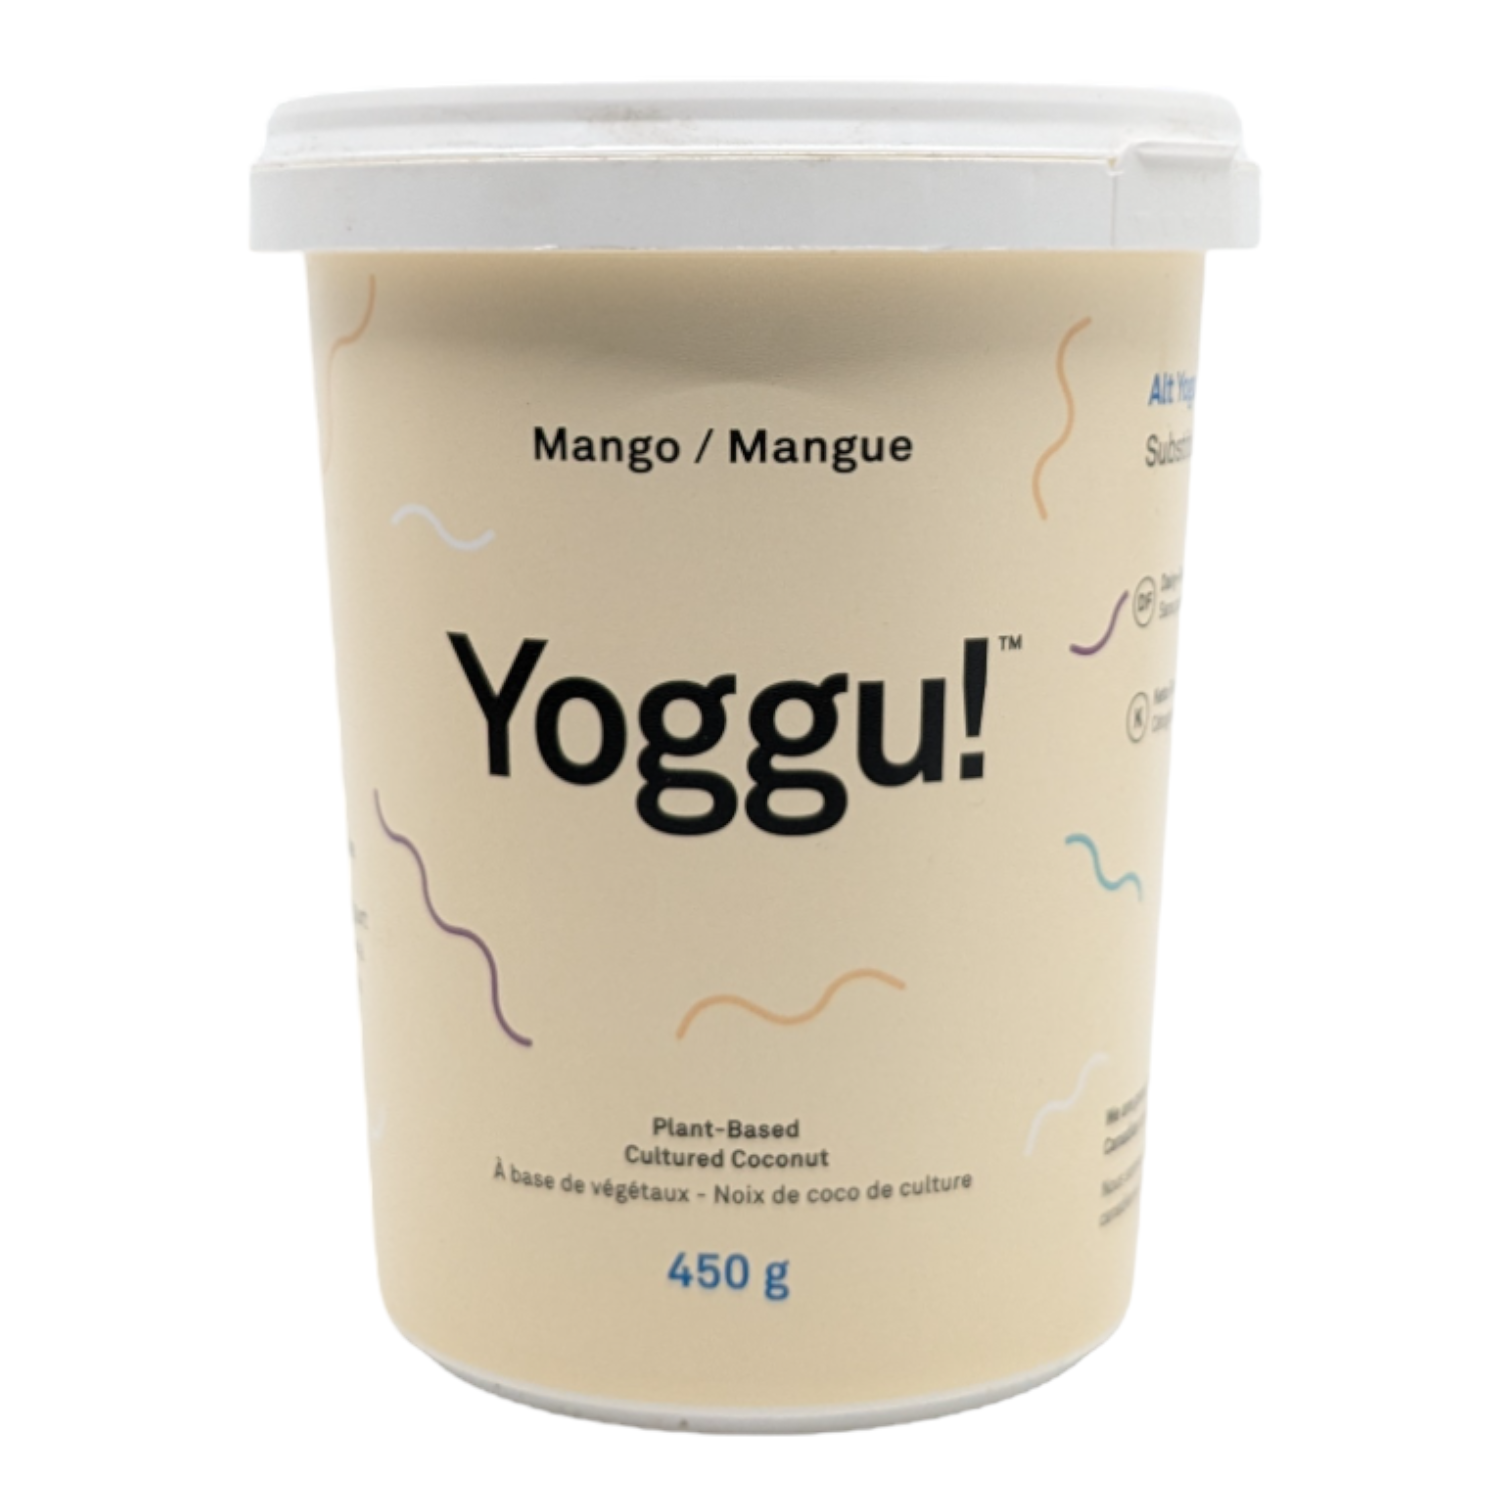 Yoggu!-Yogourt saveur mangue à base de végétaux et Noix de Coco de Culture